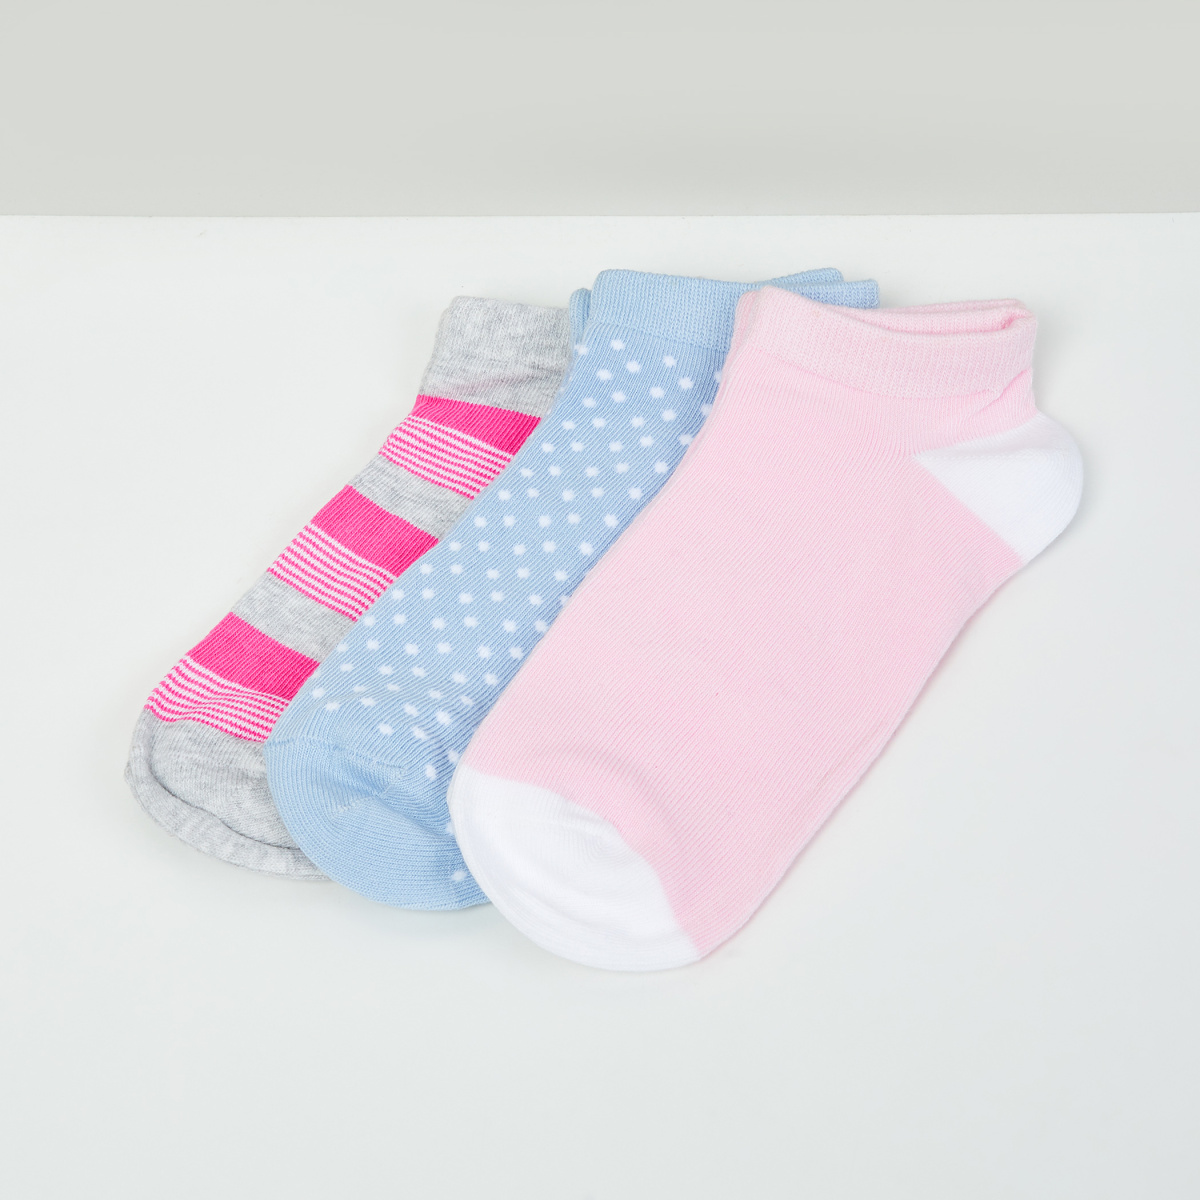 MAX Textured Socks - Set of 3